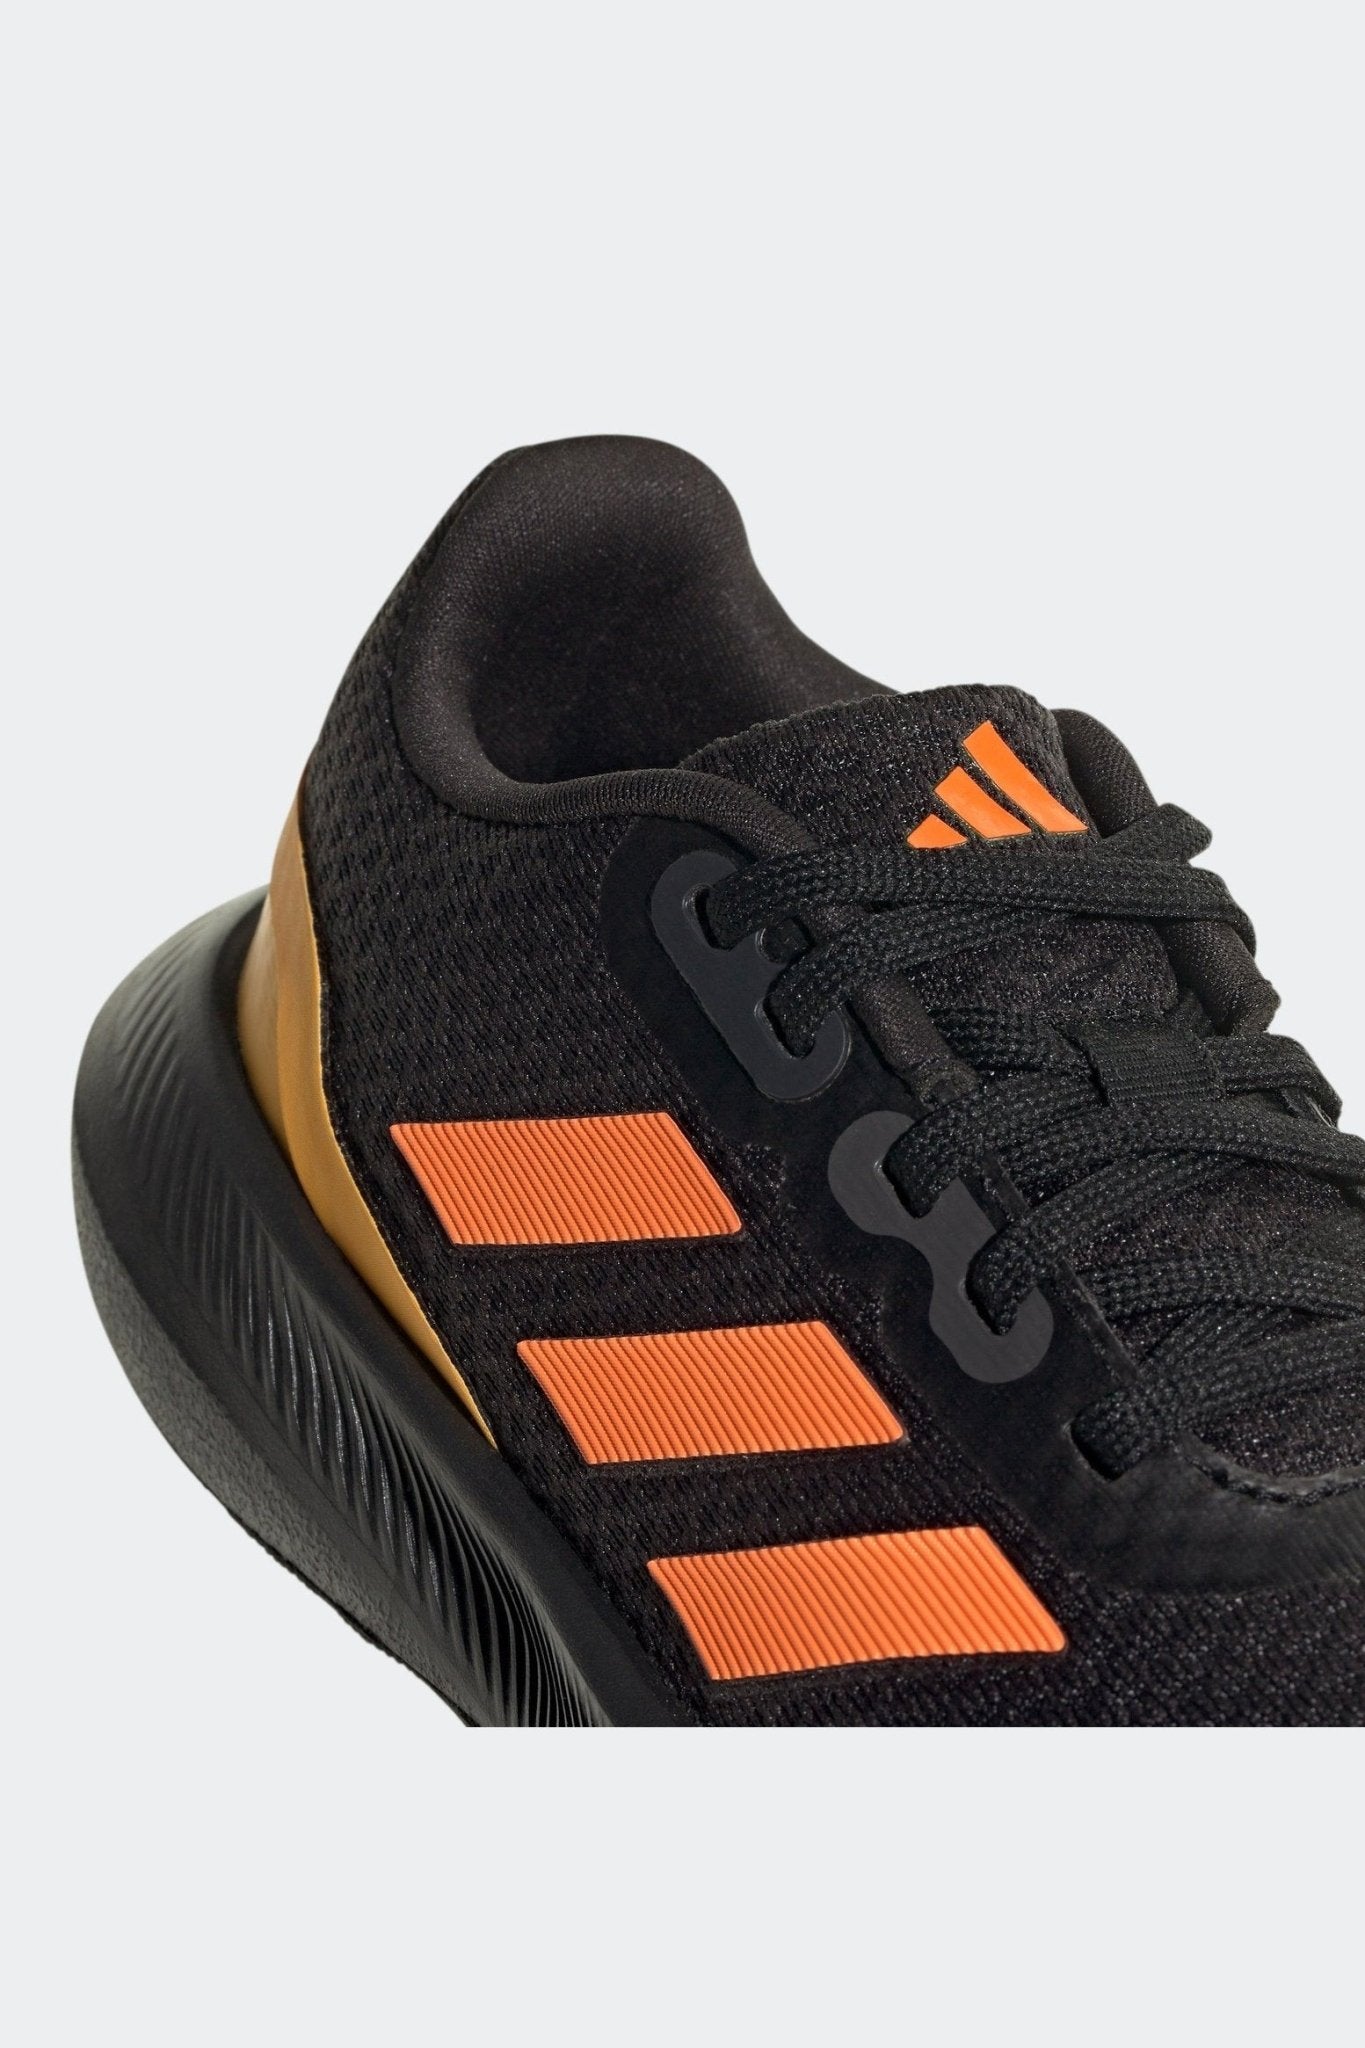 ADIDAS - נעלי ספורט לנוער RUNFALCON 3.0 בצבע שחור וכתום - MASHBIR//365